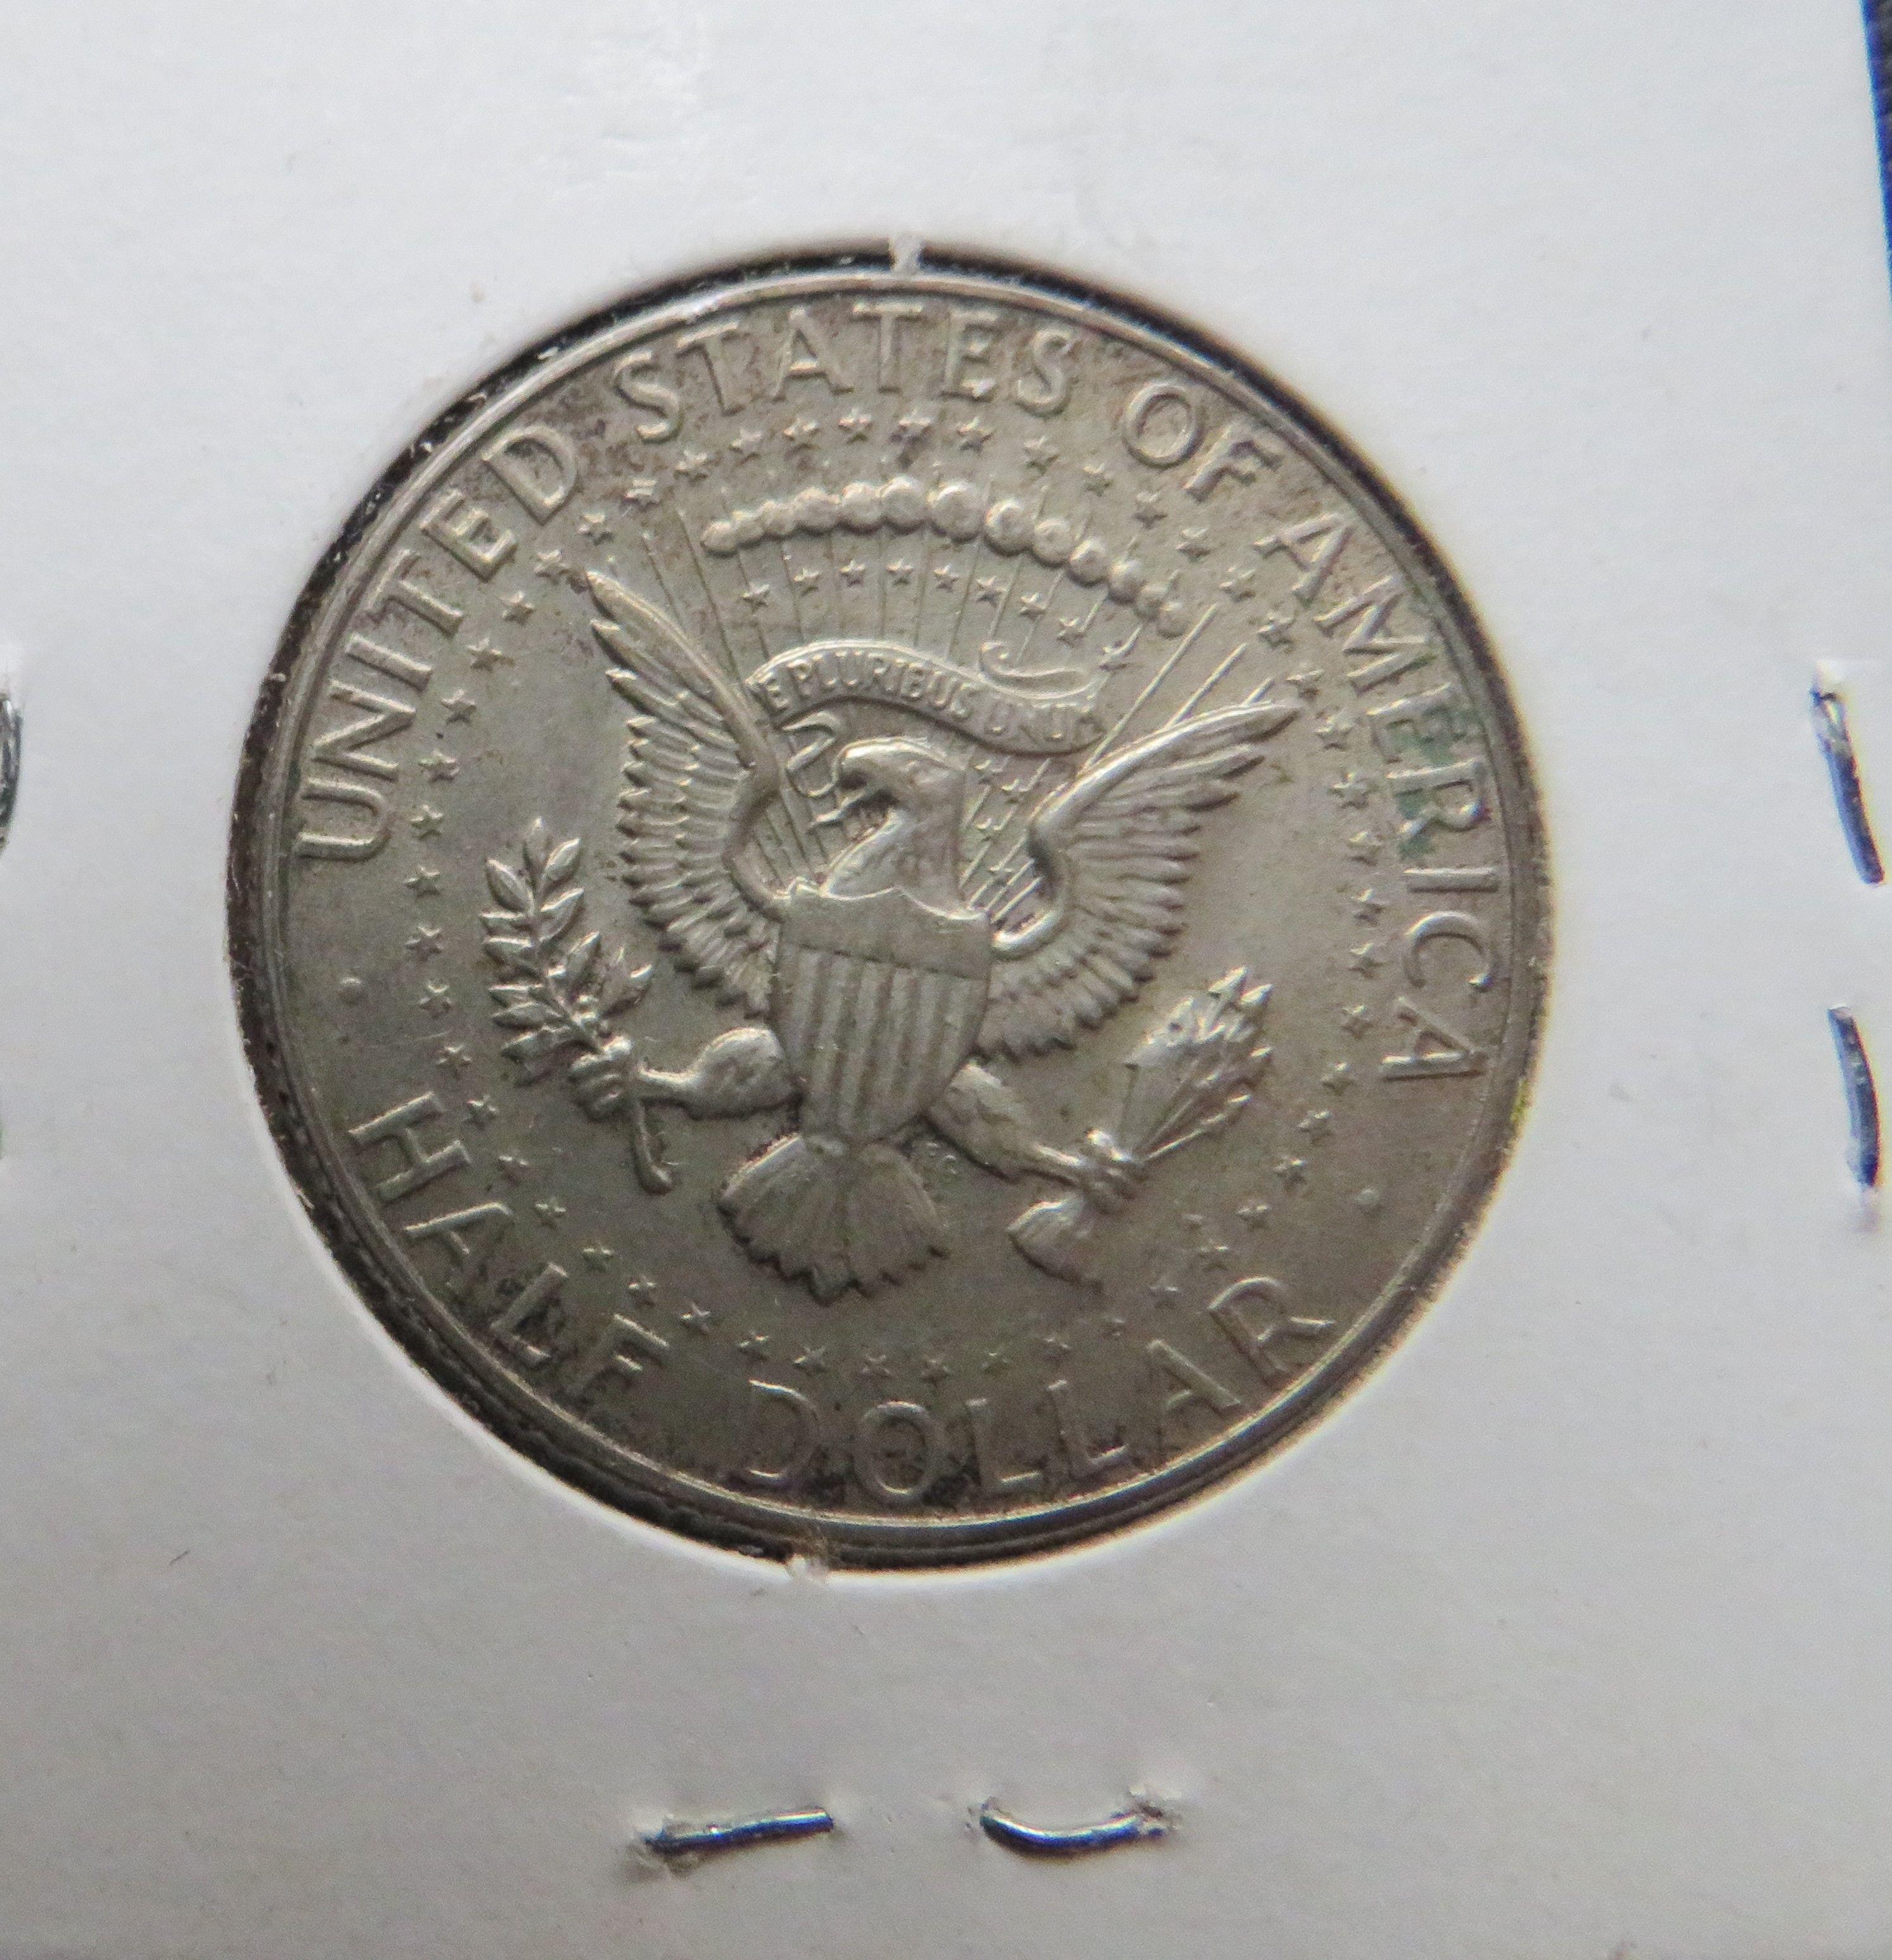 1967- Kennedy Half Dollar